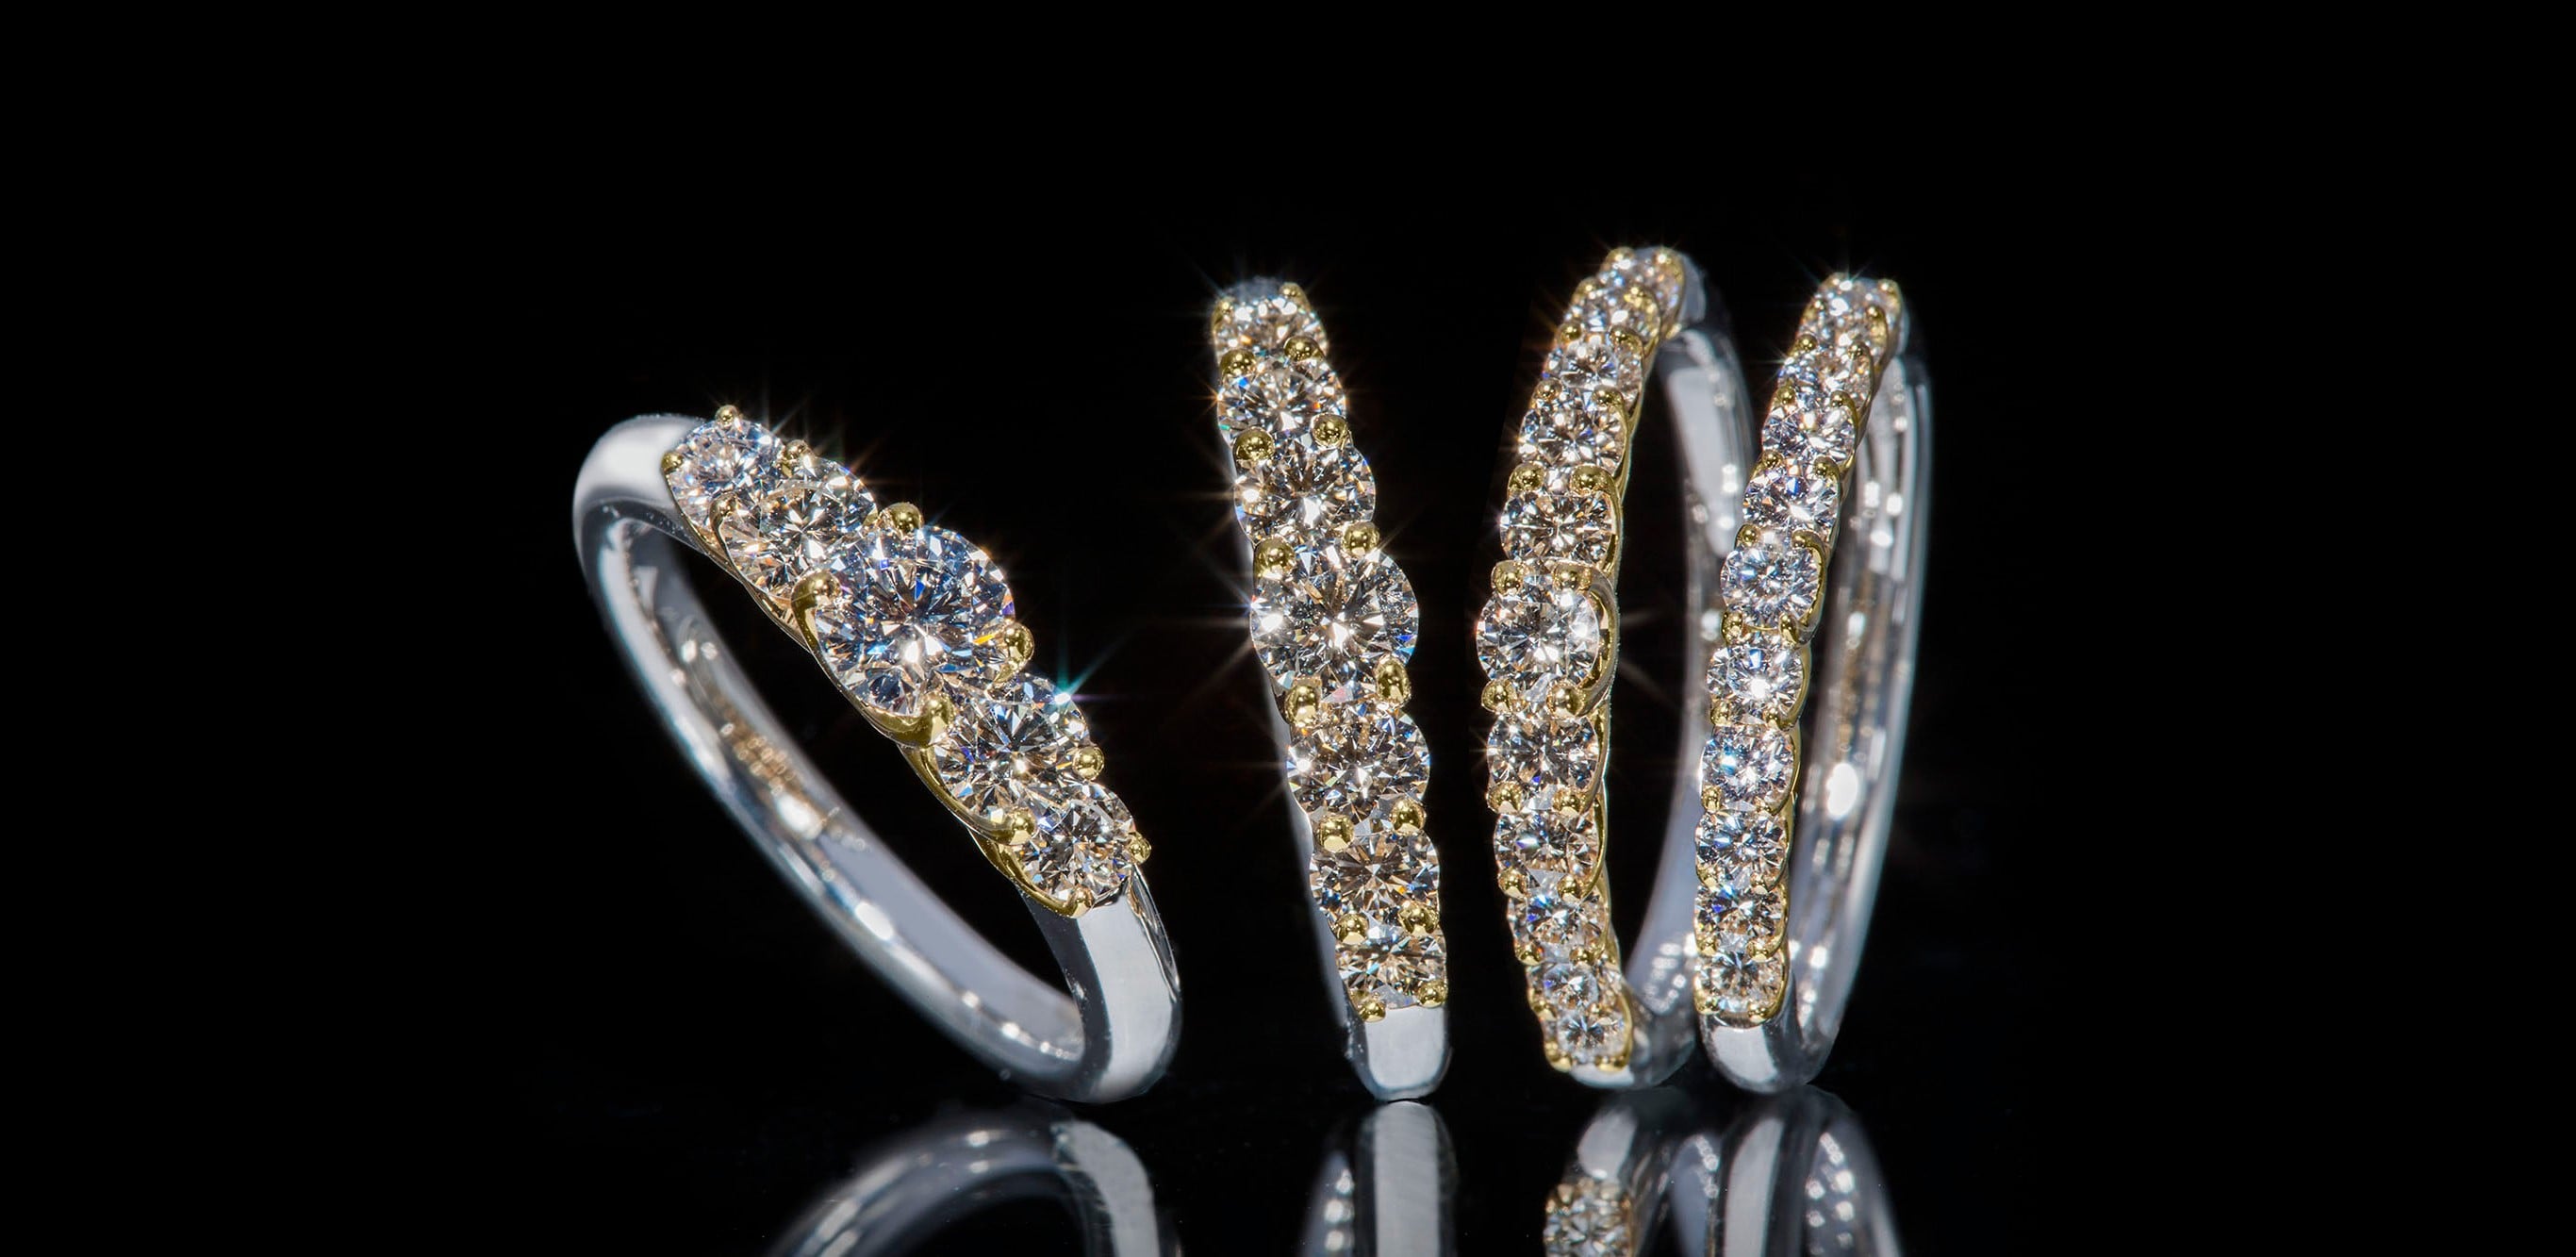 钻石“悬浮”在铂金和18K黄金中间的婚戒。钻石散发出的无色透明光芒连成一片，闪耀夺目。“悬浮钻戒” 从右开始385,000日元、550,000日元、825,000日元、1,430,000日元 均为含税价